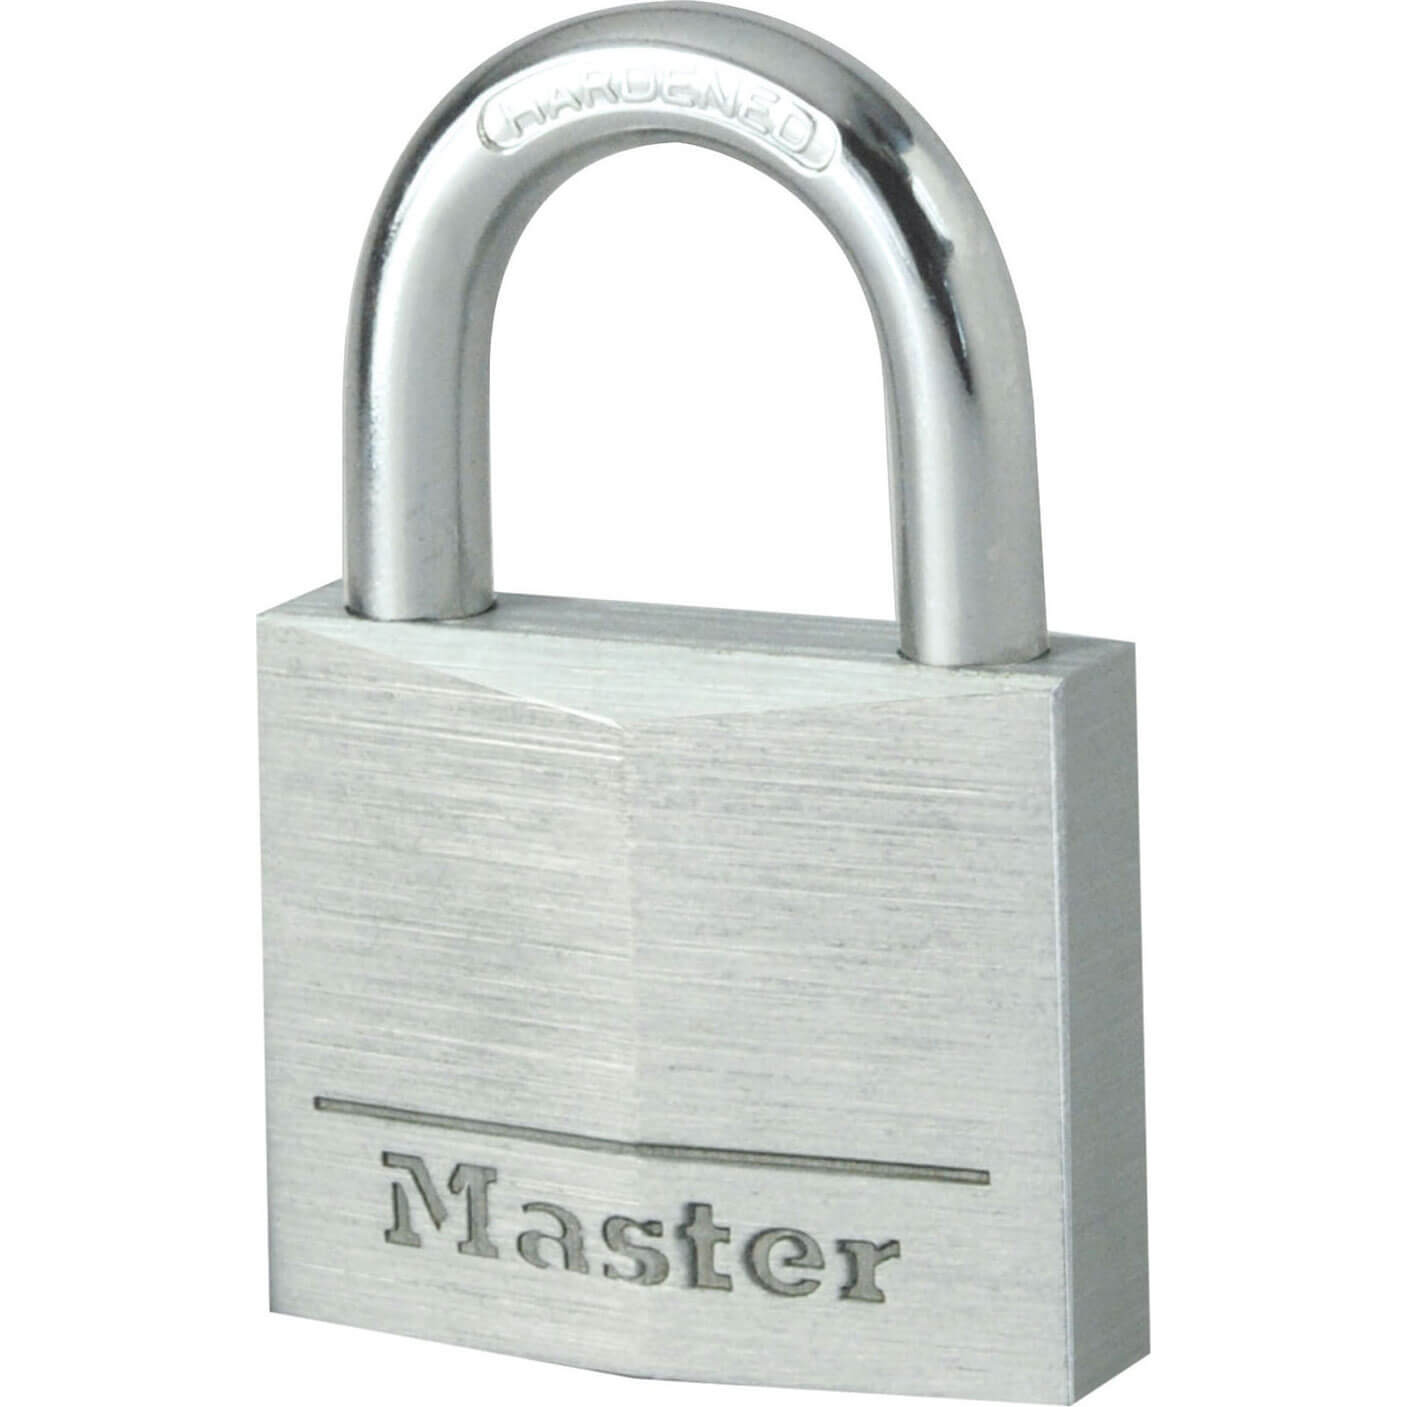 Image of Masterlock Aluminium Padlock 30mm Standard